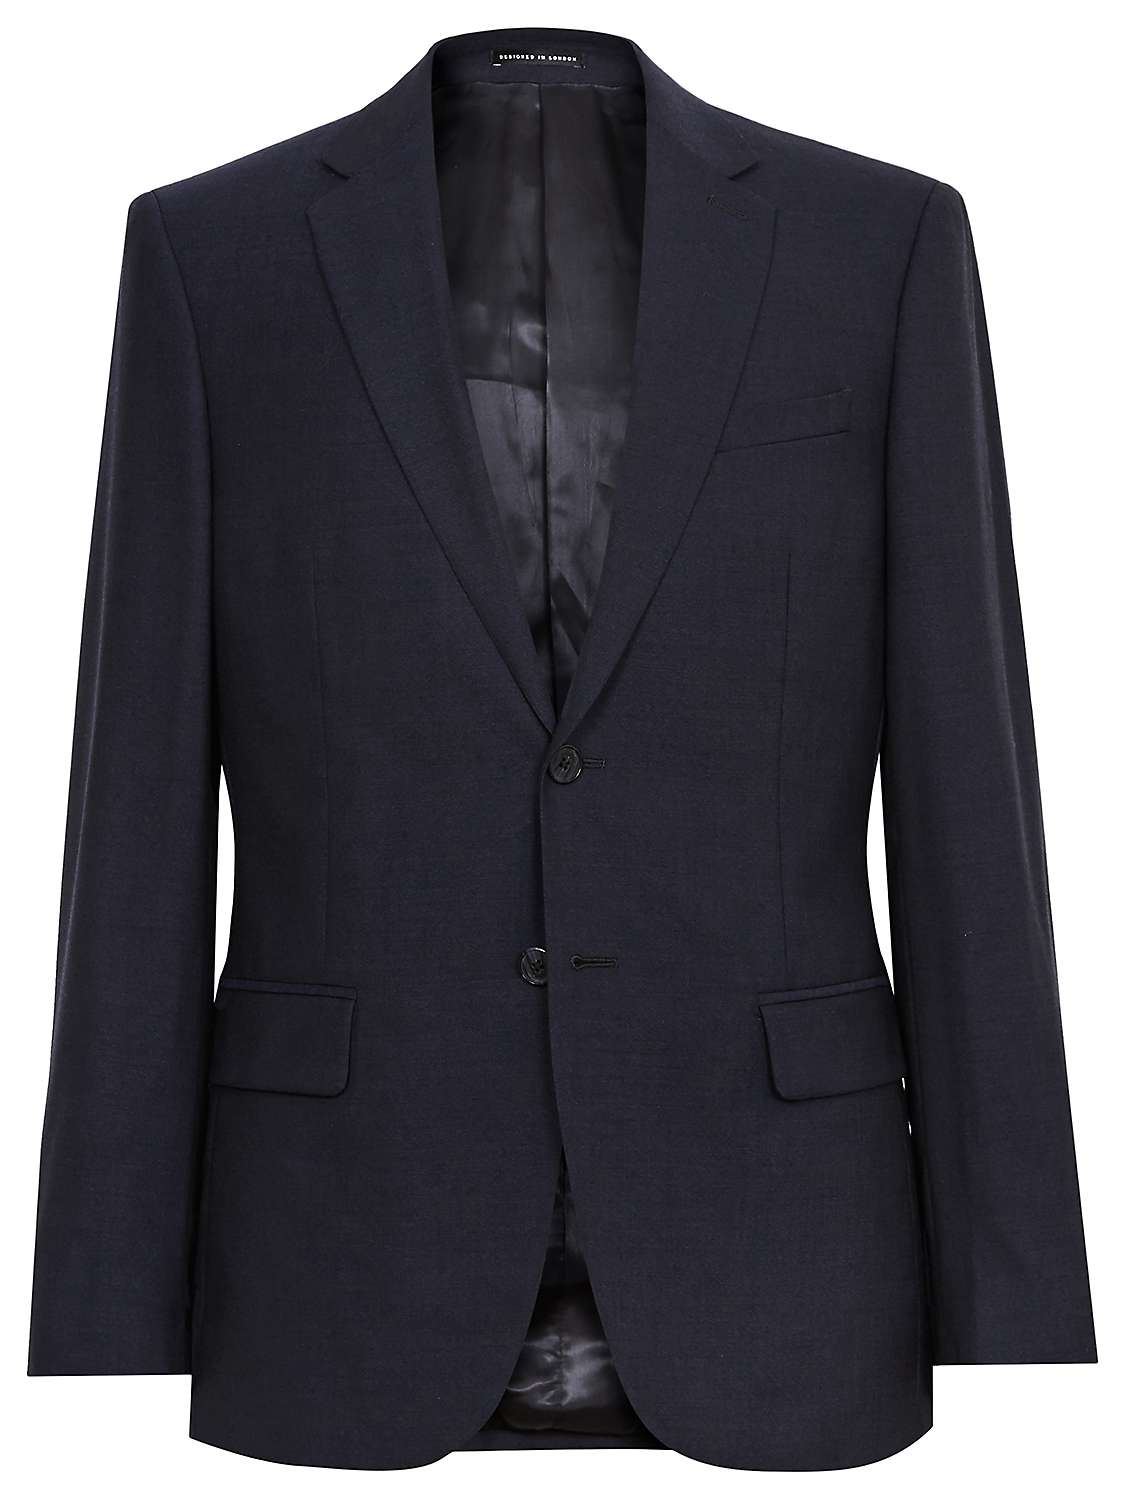 Buy Reiss Bravo Wool Slim Fit Suit Jacket, Navy Online at johnlewis.com